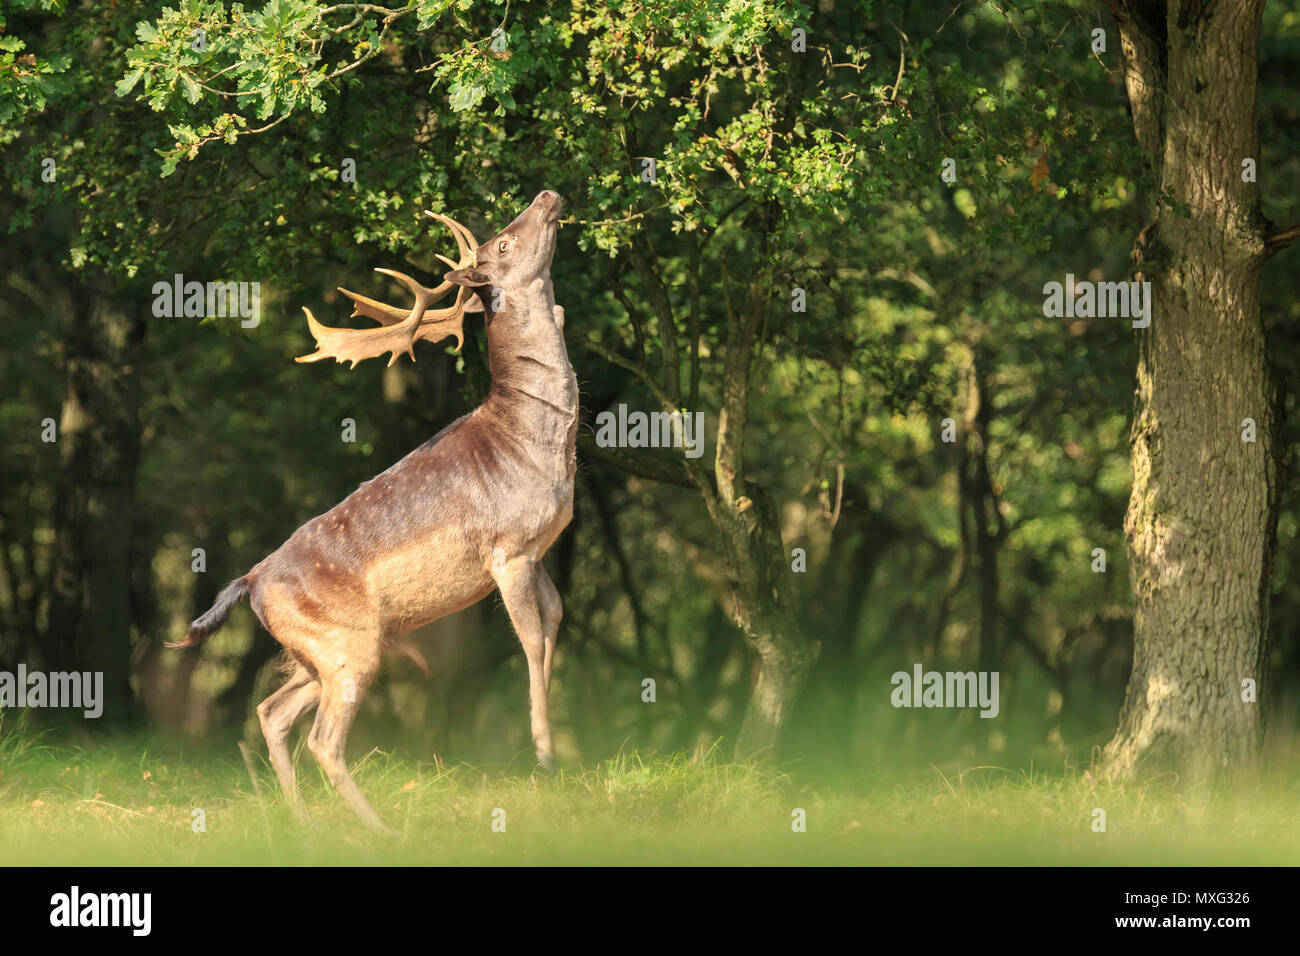 Fier daims mâles stag, Dama Dama, avec de grands bois debout sur ses pattes pour atteindre les feuilles dans une forêt vert foncé pendant la saison d'automne. Banque D'Images